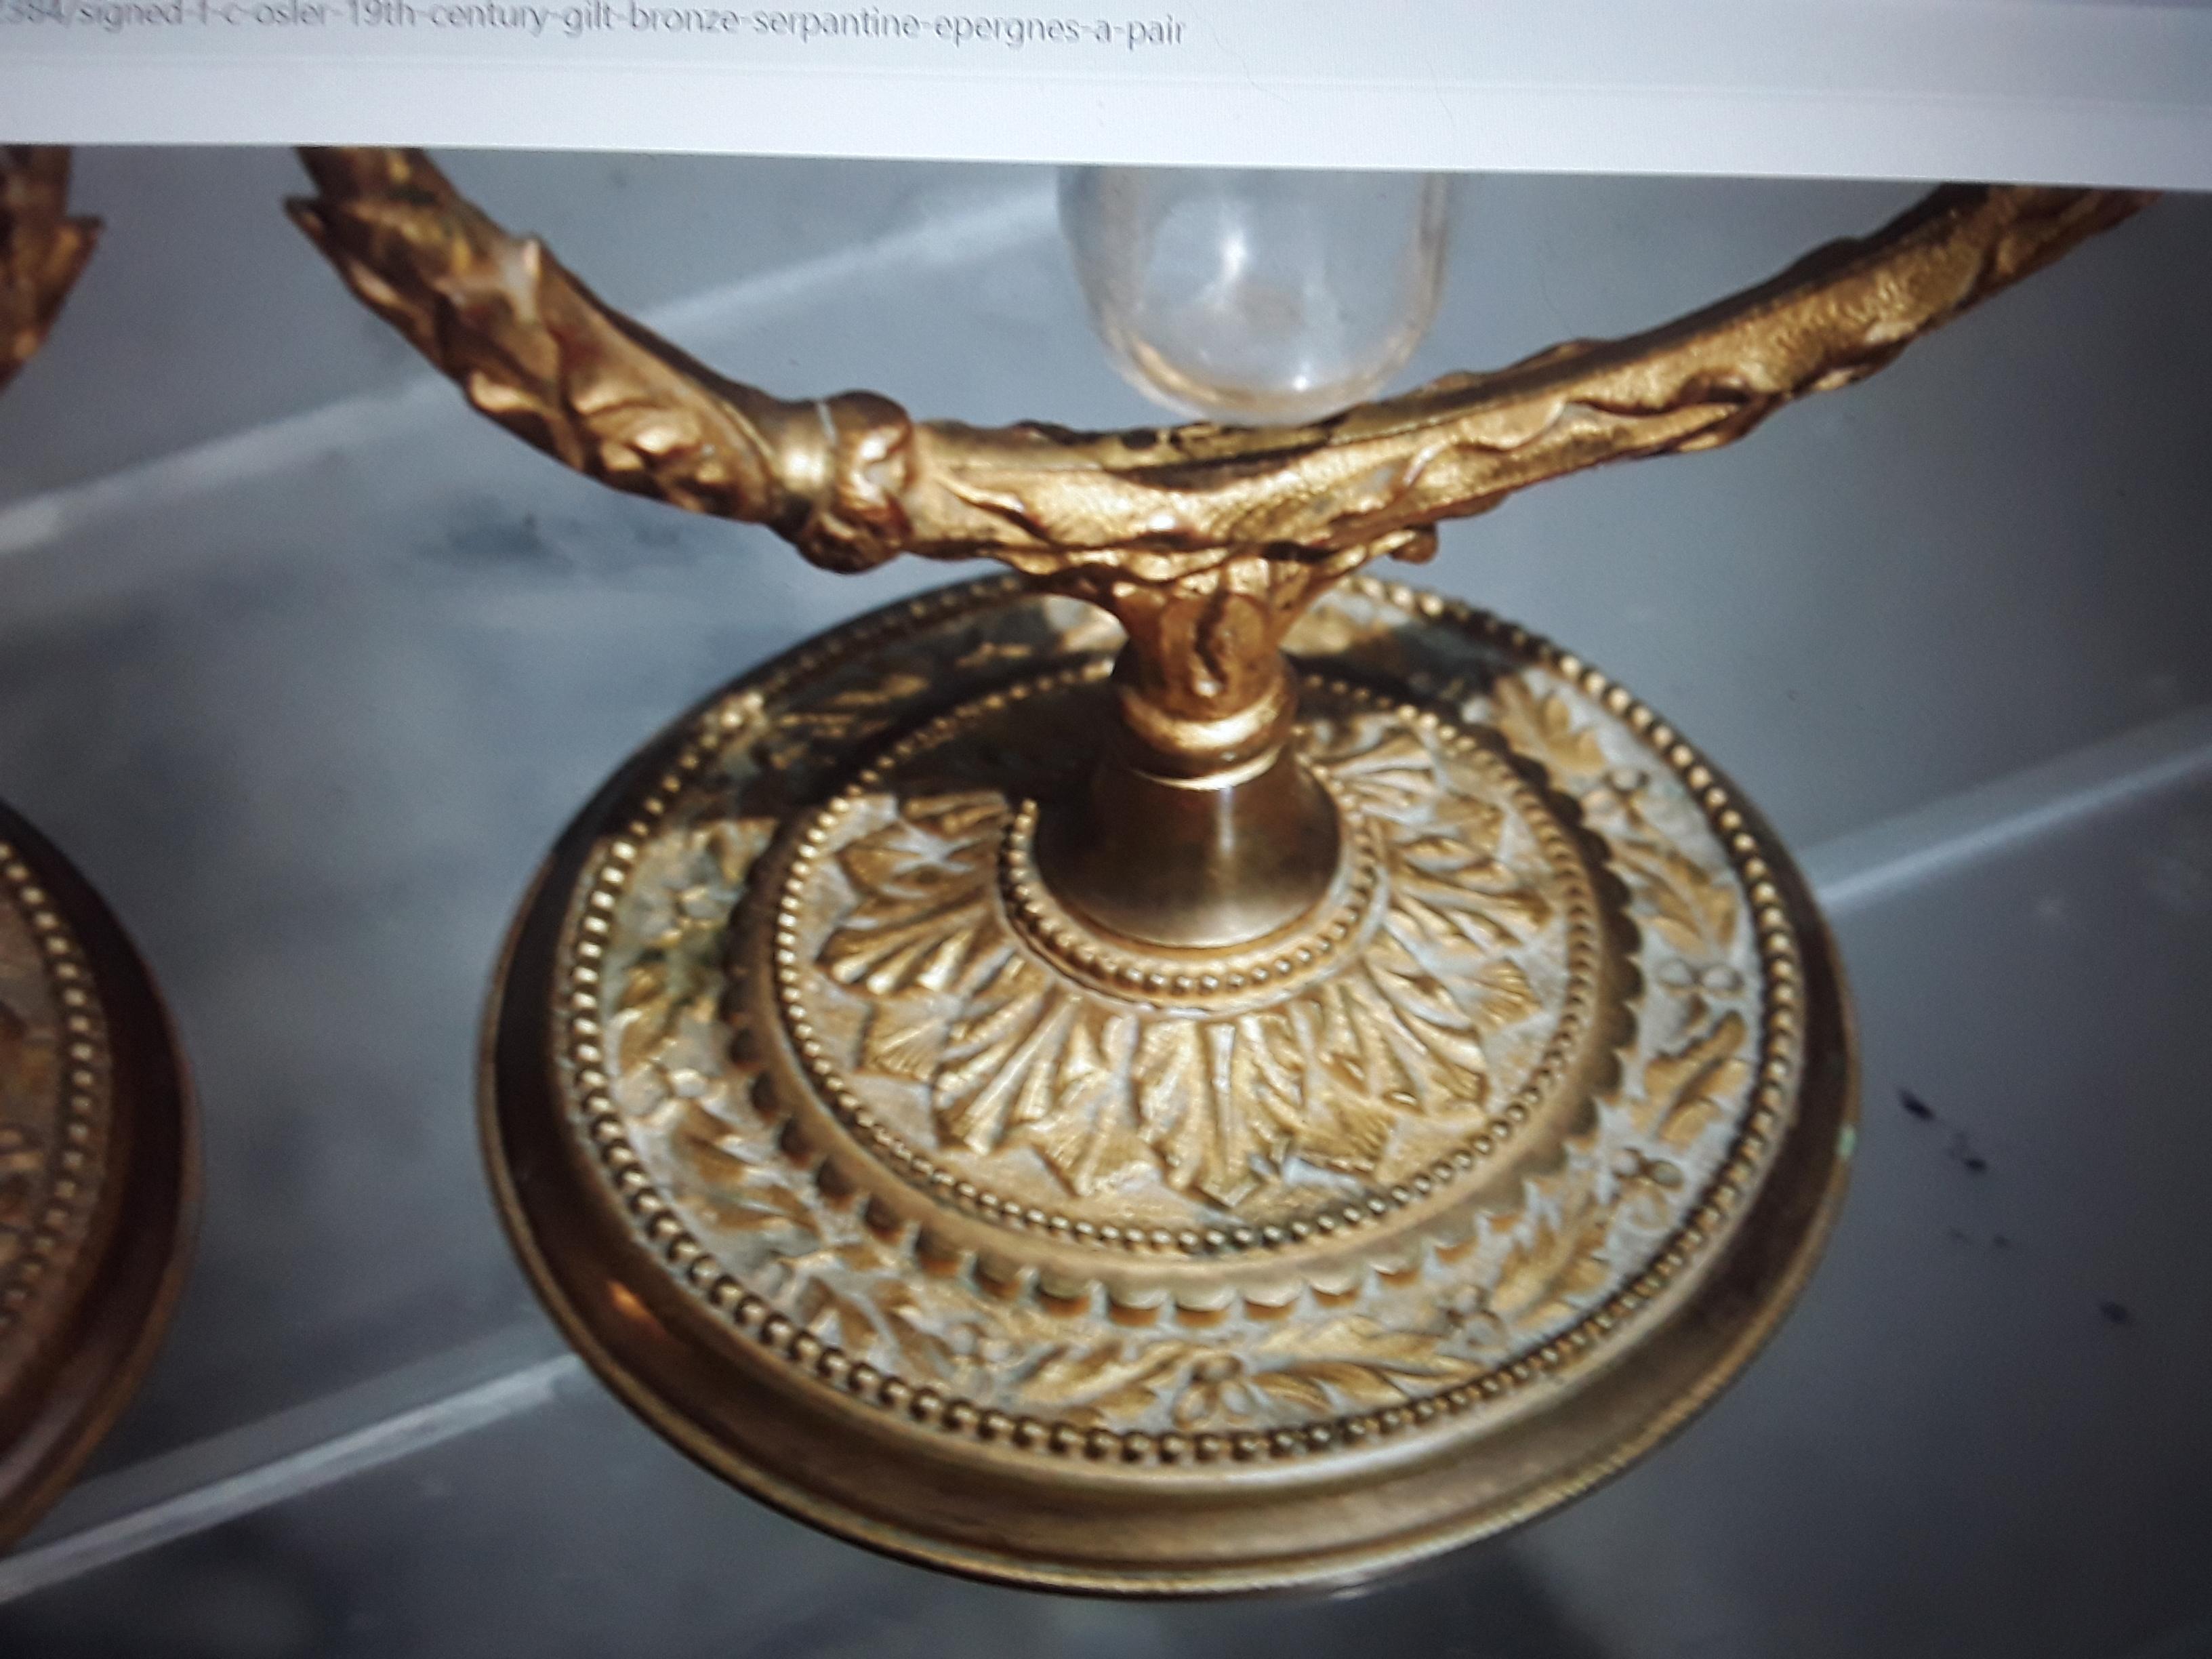 Pr 19thc Antique Signed F&C Osler Crystal/Gilt Bronze Serpentine Vase/ Epergne For Sale 4